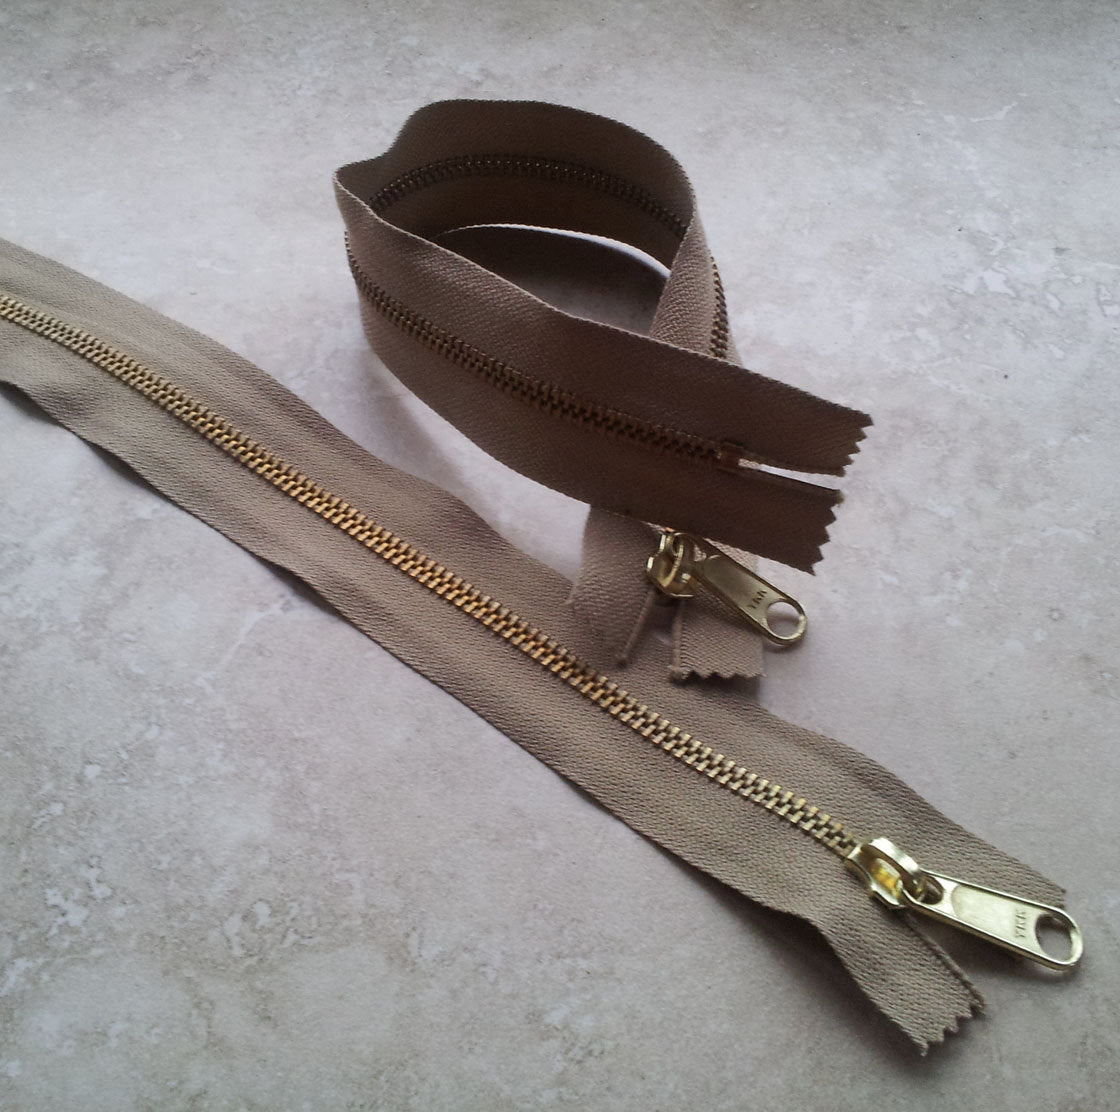 Vintage YKK Metal Zip - 32cm (12.5") - Taupe/ Neutral